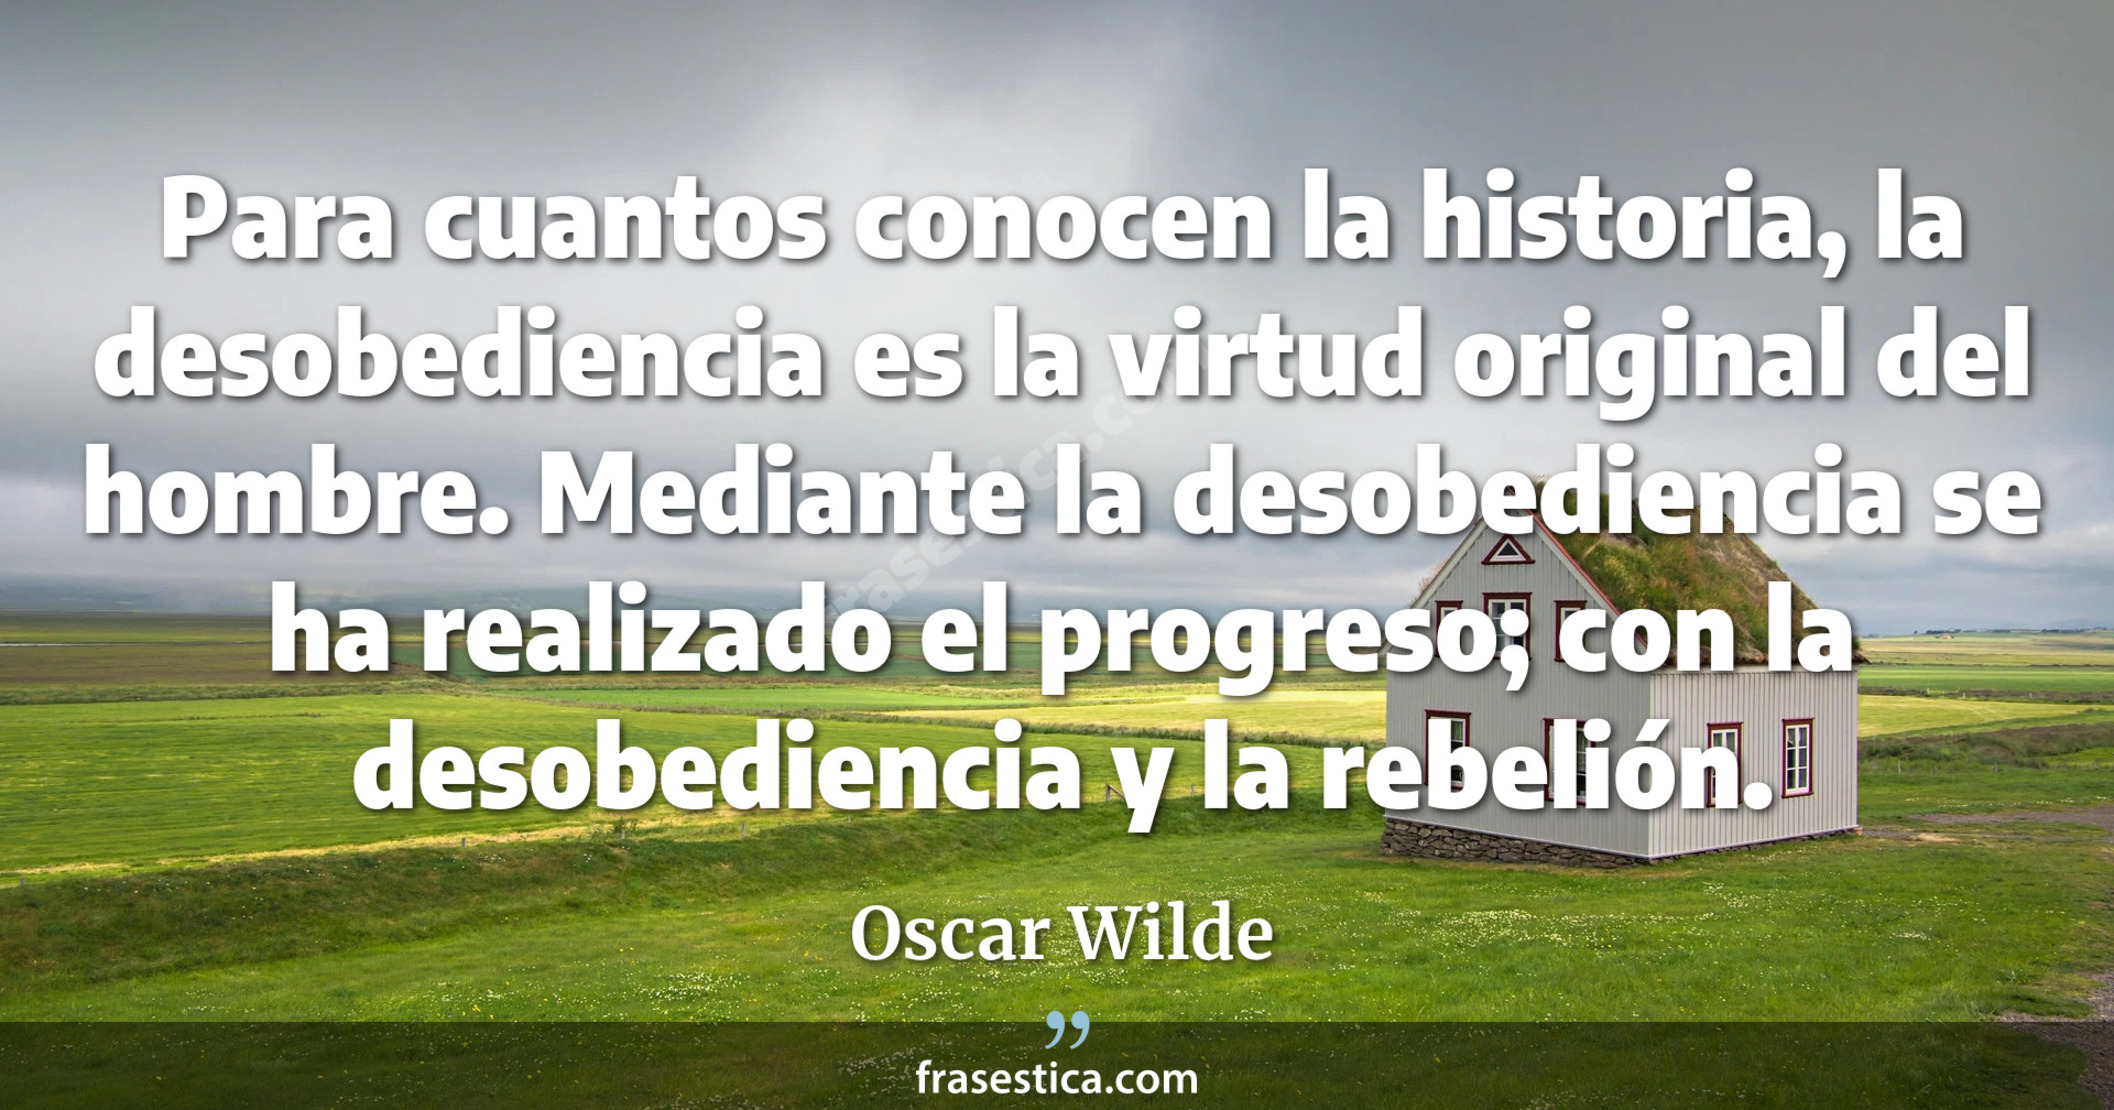 Para cuantos conocen la historia, la desobediencia es la virtud original del hombre. Mediante la desobediencia se ha realizado el progreso; con la desobediencia y la rebelión. - Oscar Wilde